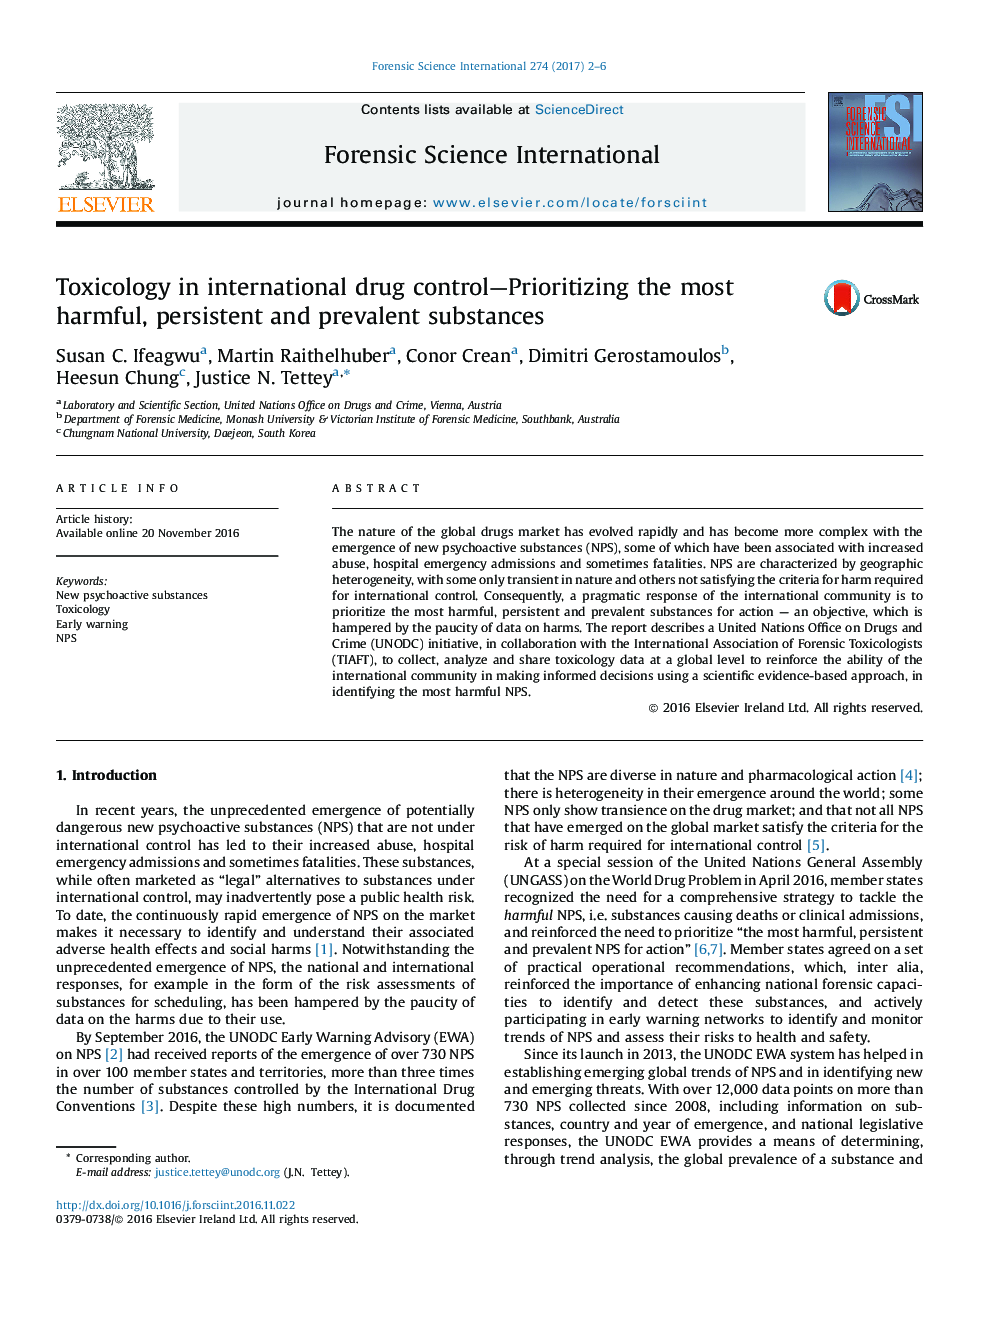 سم شناسی در کنترل مواد مخدر بین المللی - اولویت بندی مواد مضر، پایدار و رایج